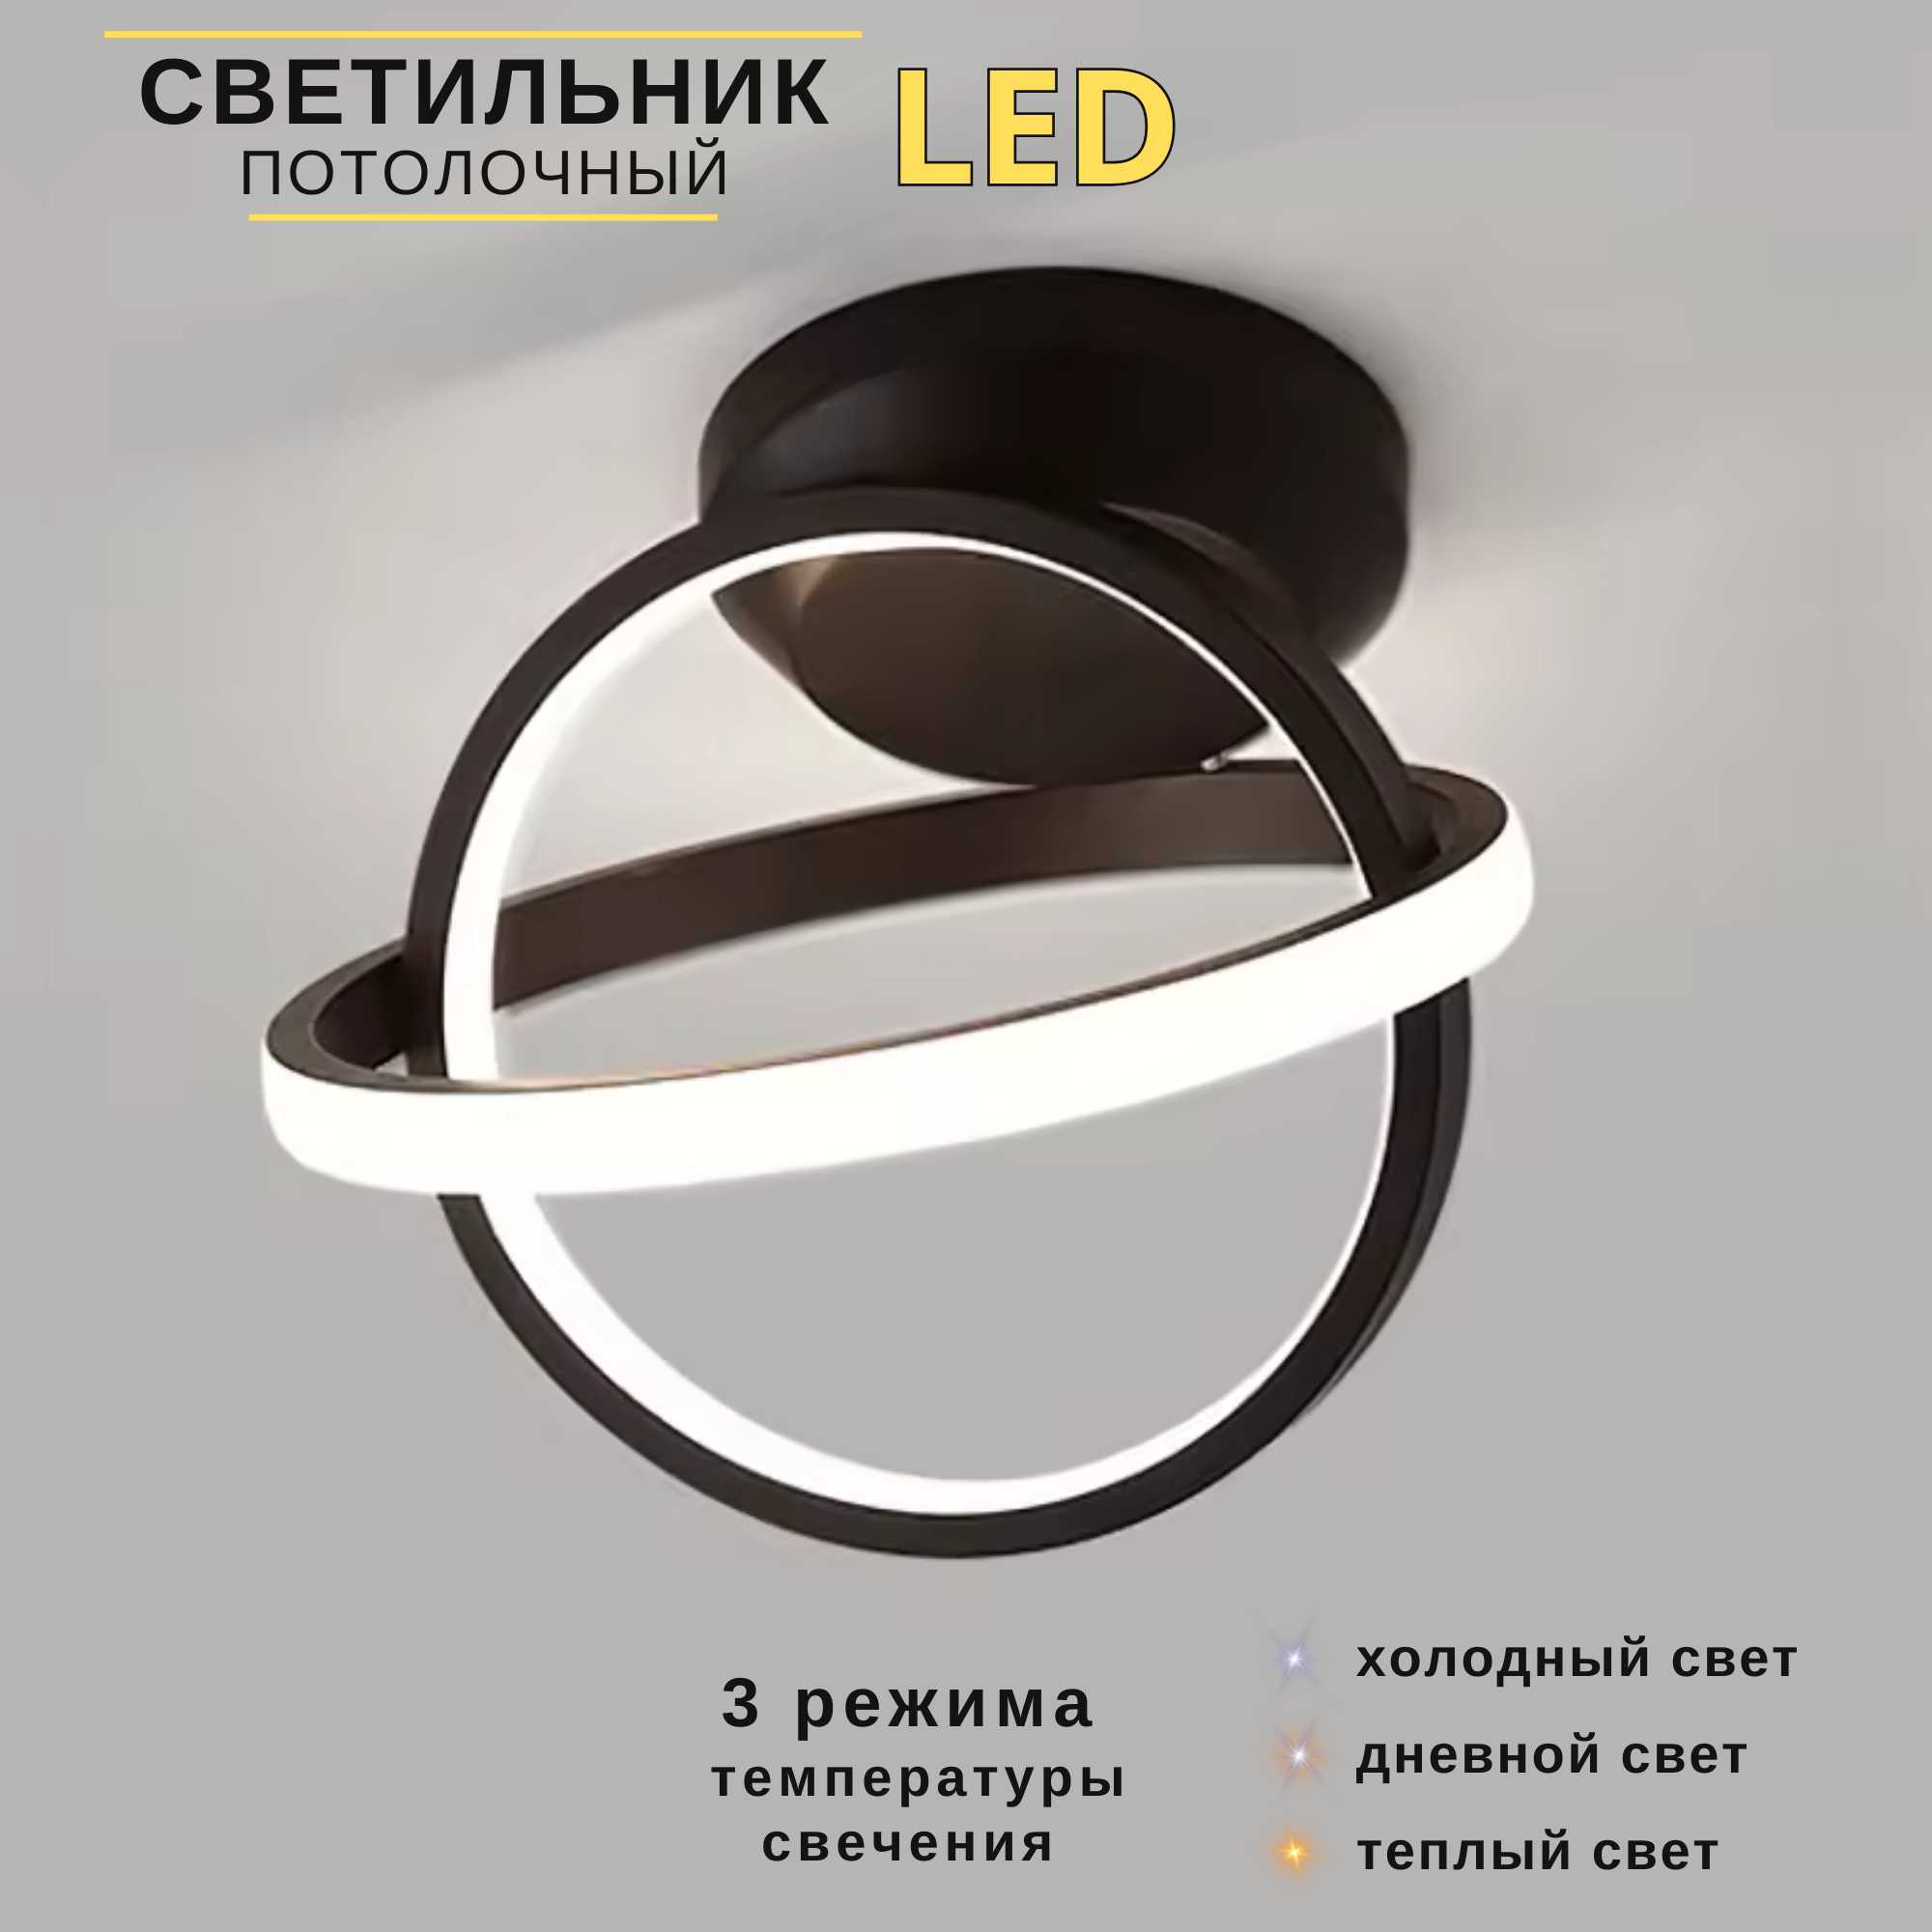 Светильник потолочный светодиодный Lumire LED 22Вт 3000-6000К кольца черный